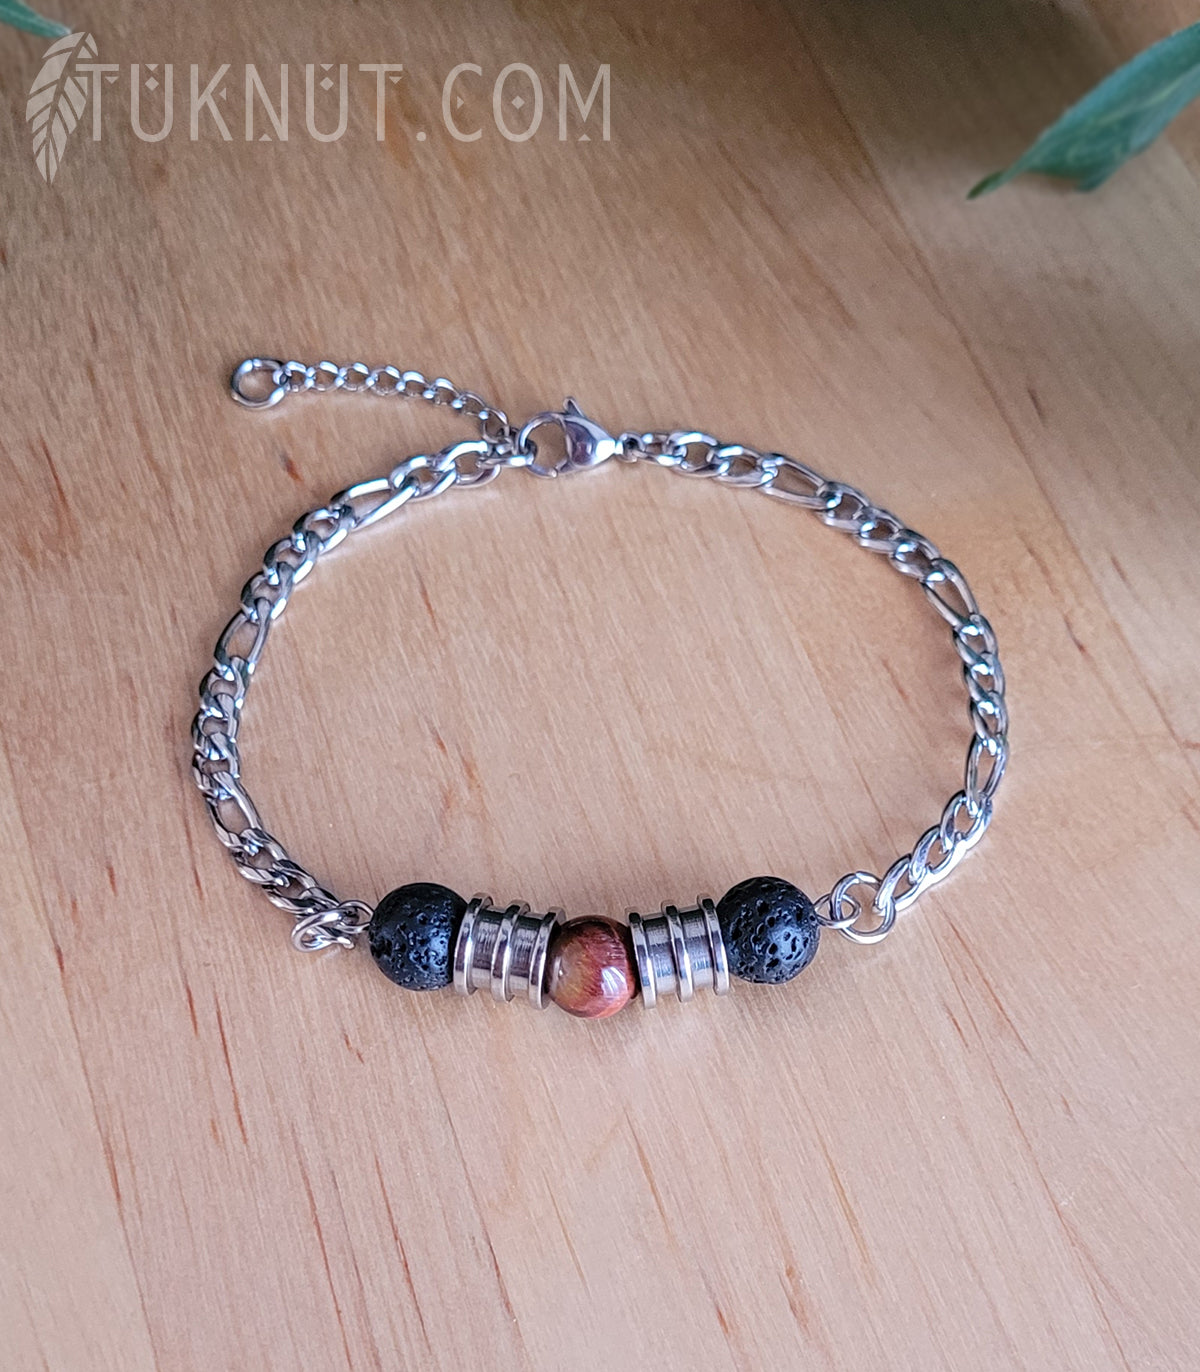 Bracelet en acier inoxydable avec pierre volcanique et oeil de tigre (couleur : noir, brun/rouge et argent) TUKNUT